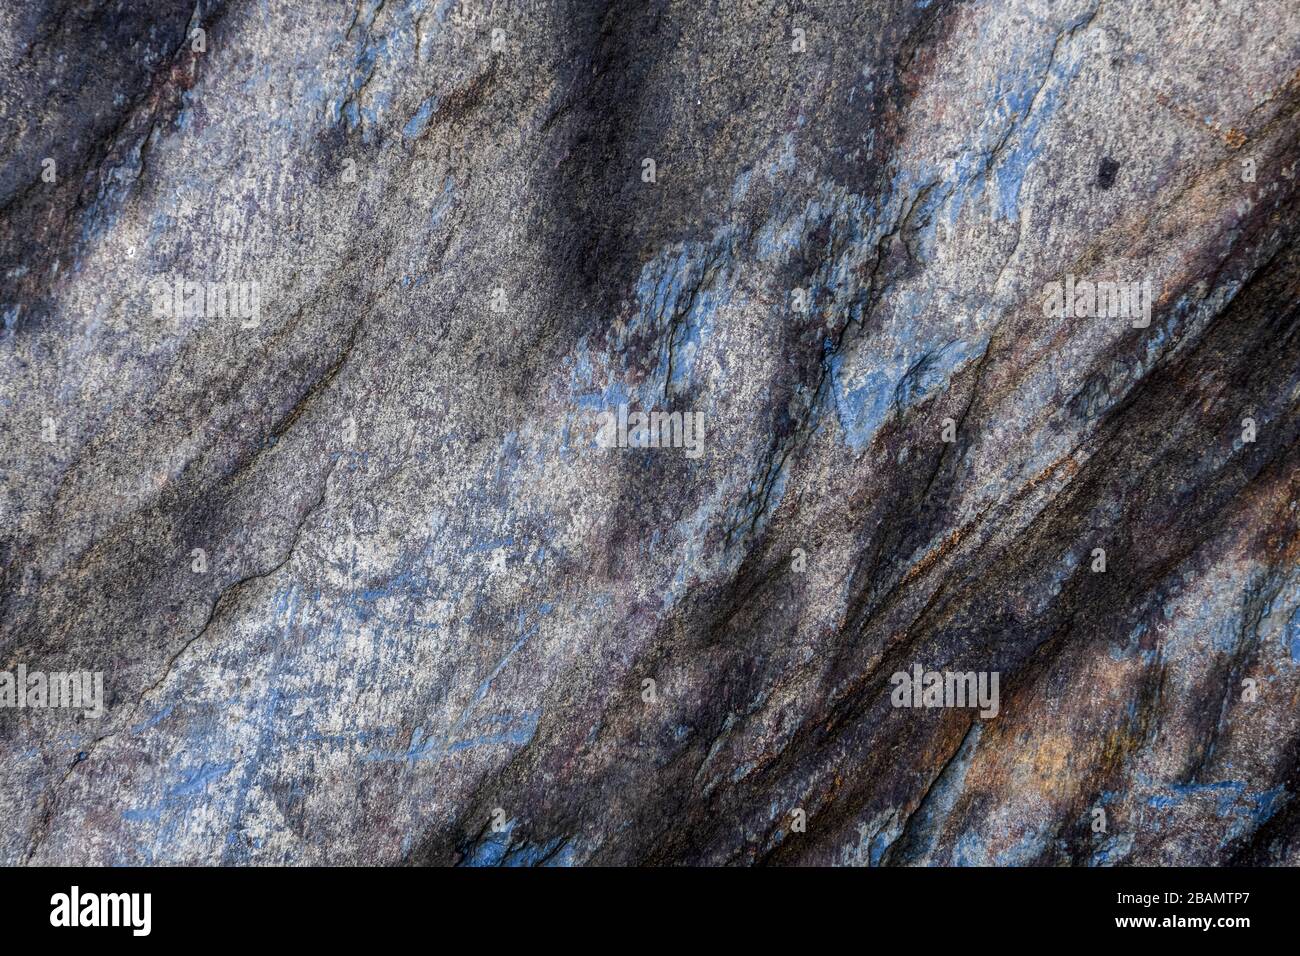 Stone texture in Georgia Stock Photo